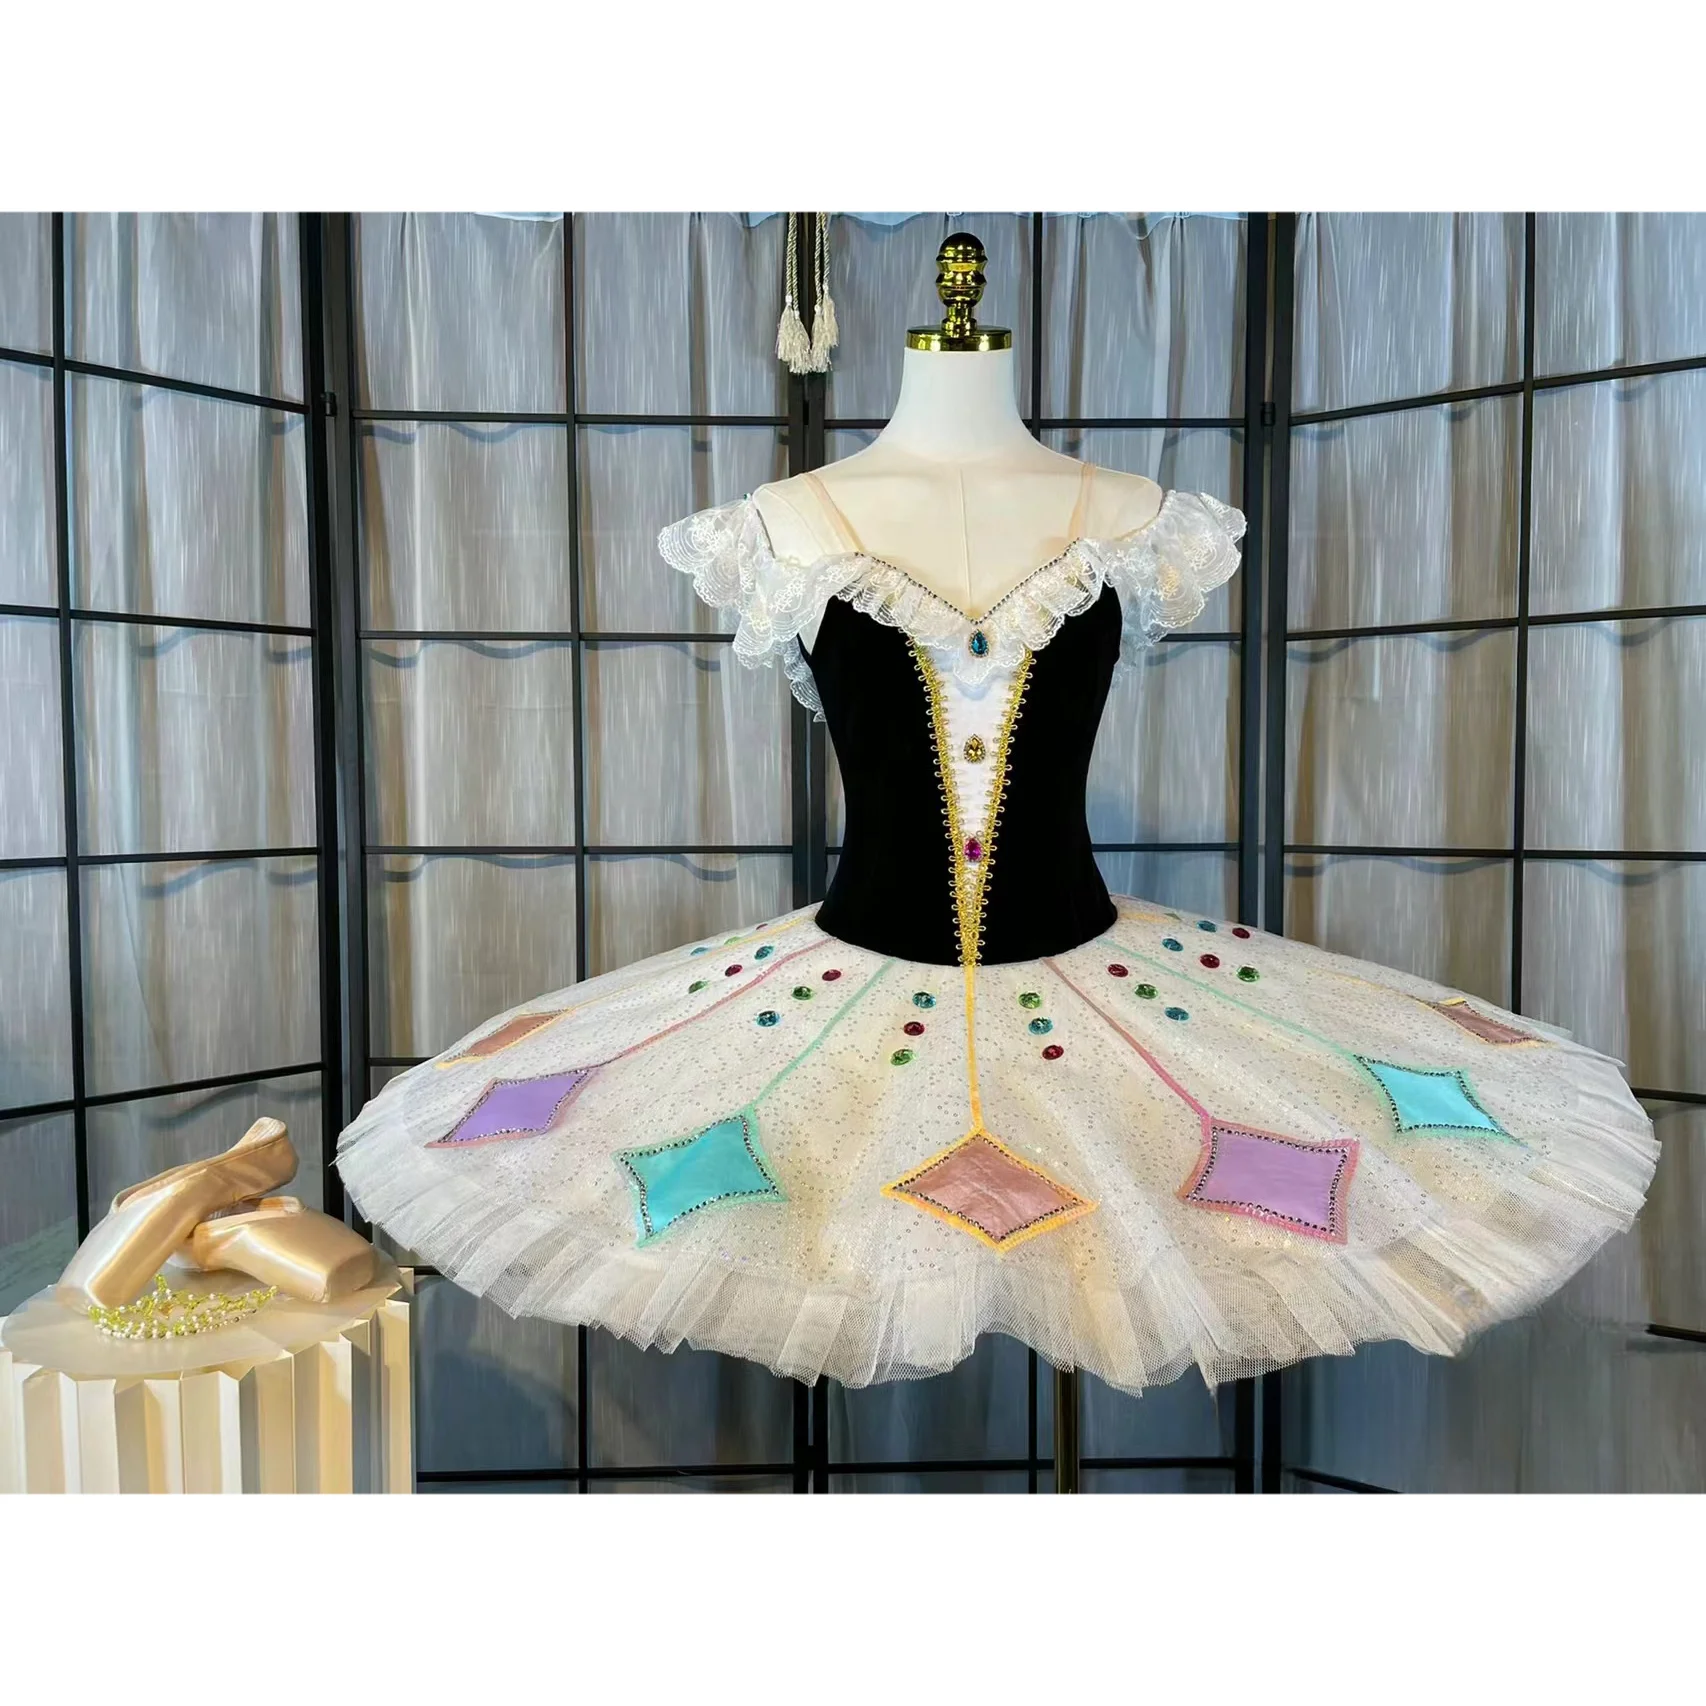 

Детское балетное платье-пачка, костюм для выступлений, балетный костюм клоуна «Лебедь», воздушное газовое платье для девушек